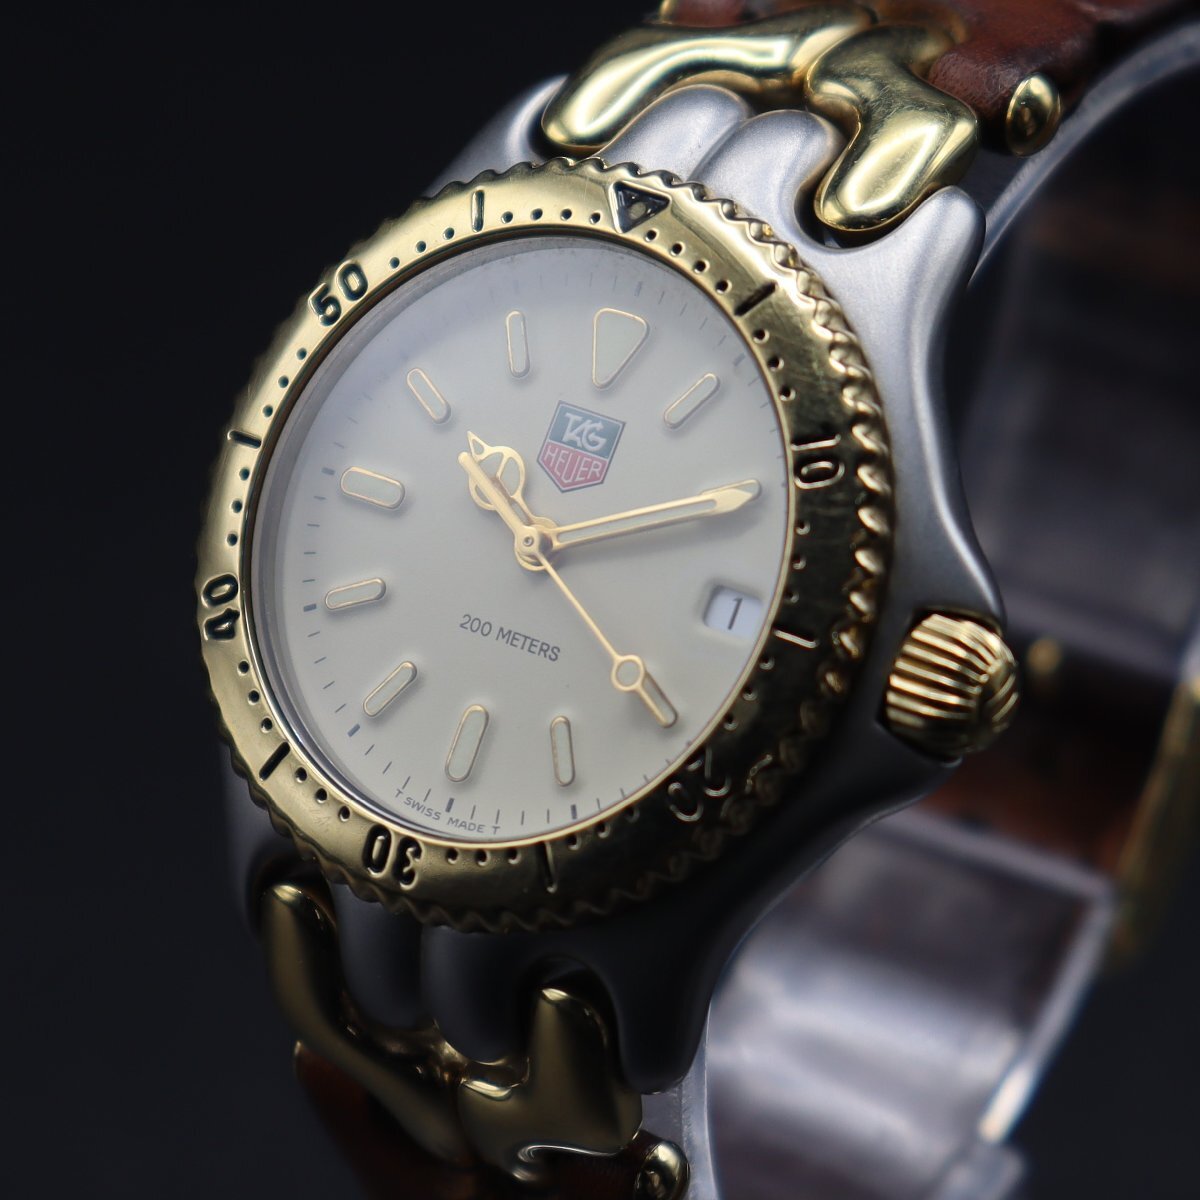 TAG HEUER タグホイヤー セルシリーズ 200M防水 S95.713C クォーツ コンビカラー 純正尾錠 スイス製 ボーイズ腕時計の画像1